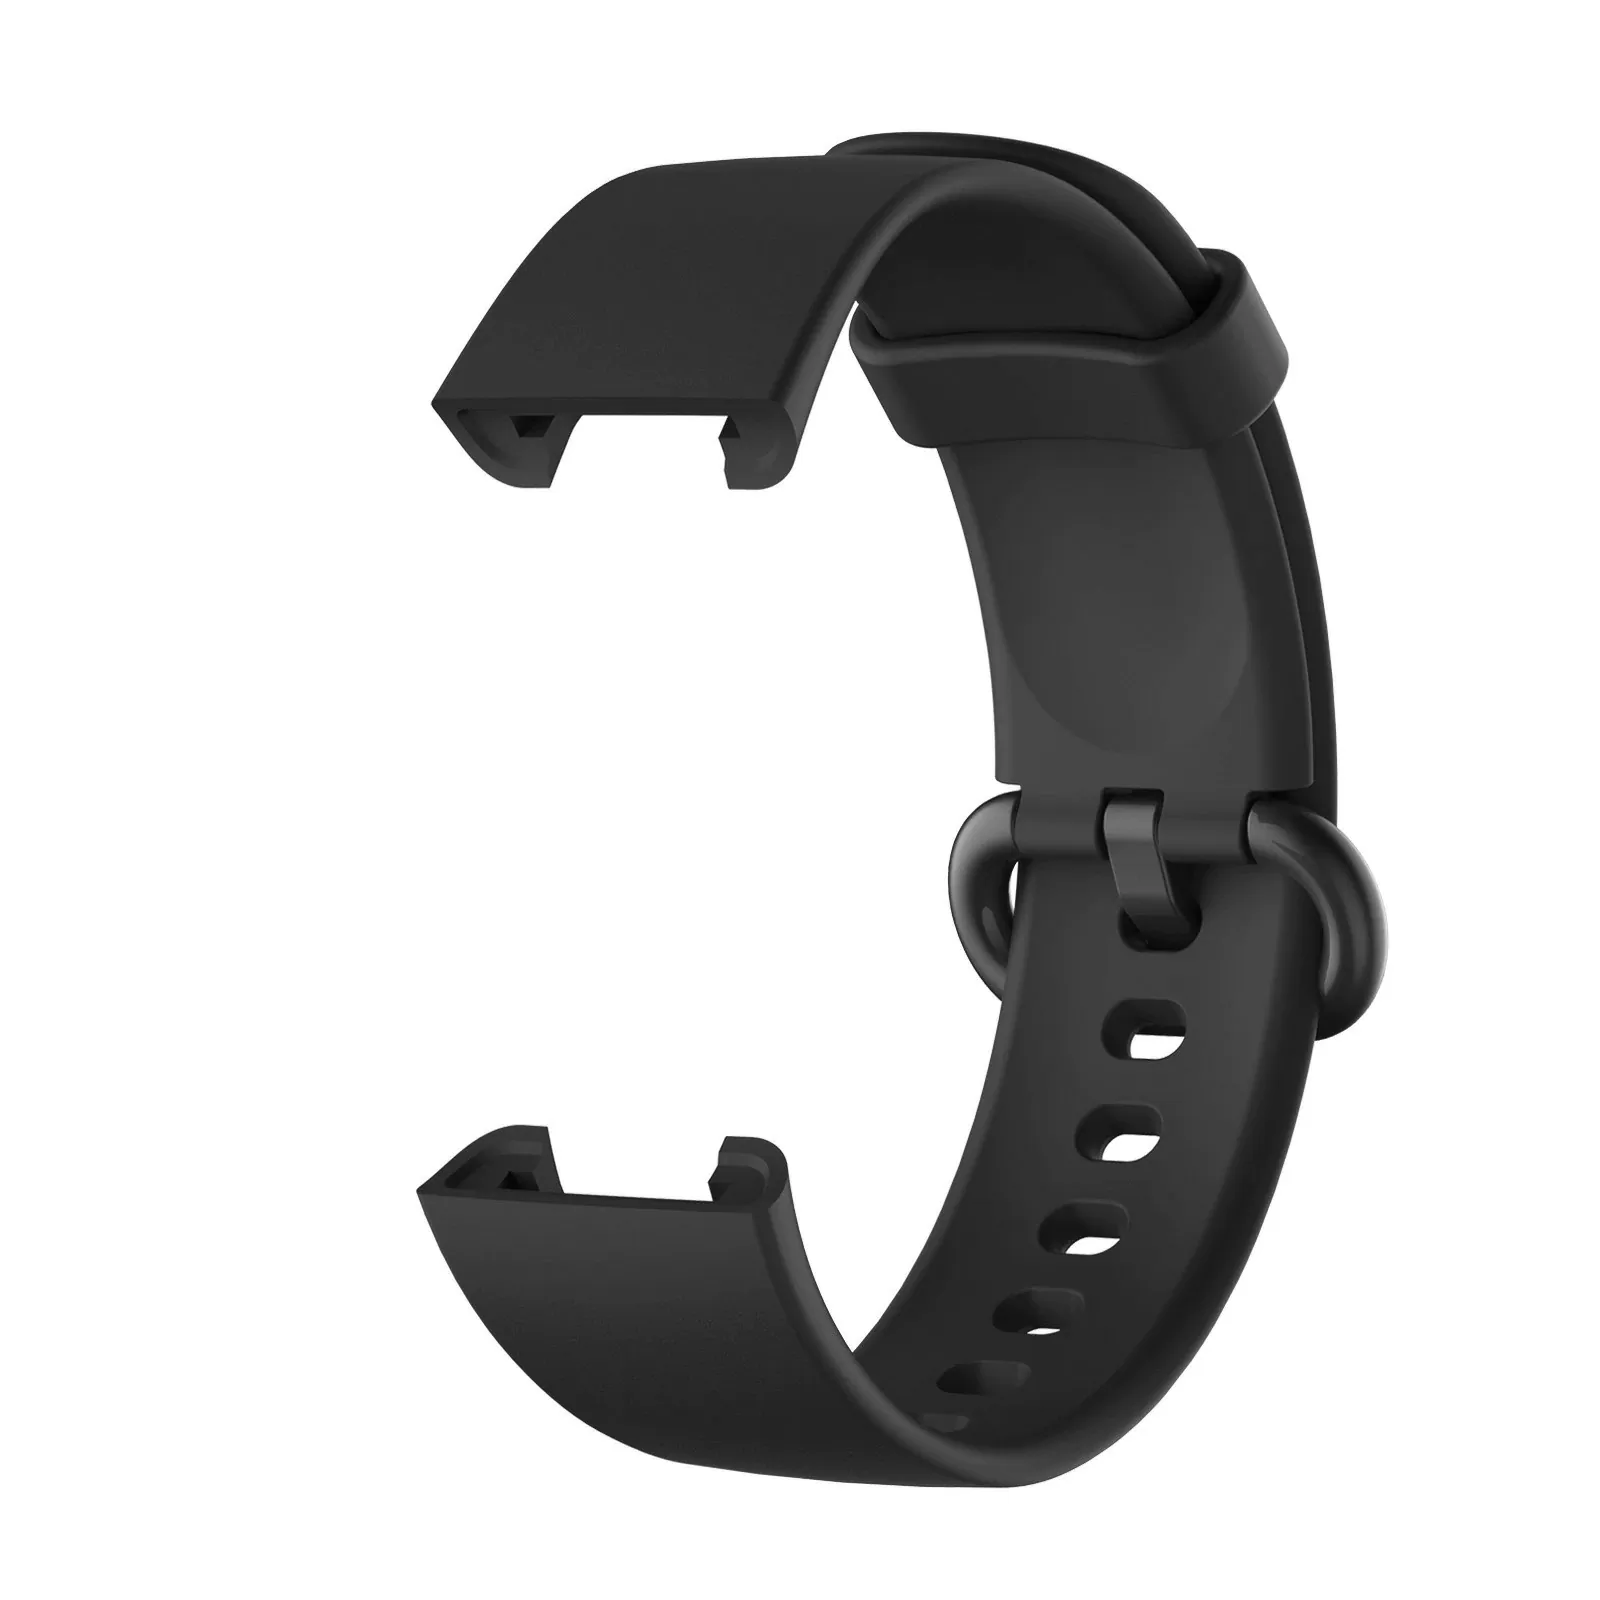  LANADO Correa de cuero para xiaomi redmi mi reloj 2 Lite  pulsera smartwatch accesorios de reemplazo : Celulares y Accesorios